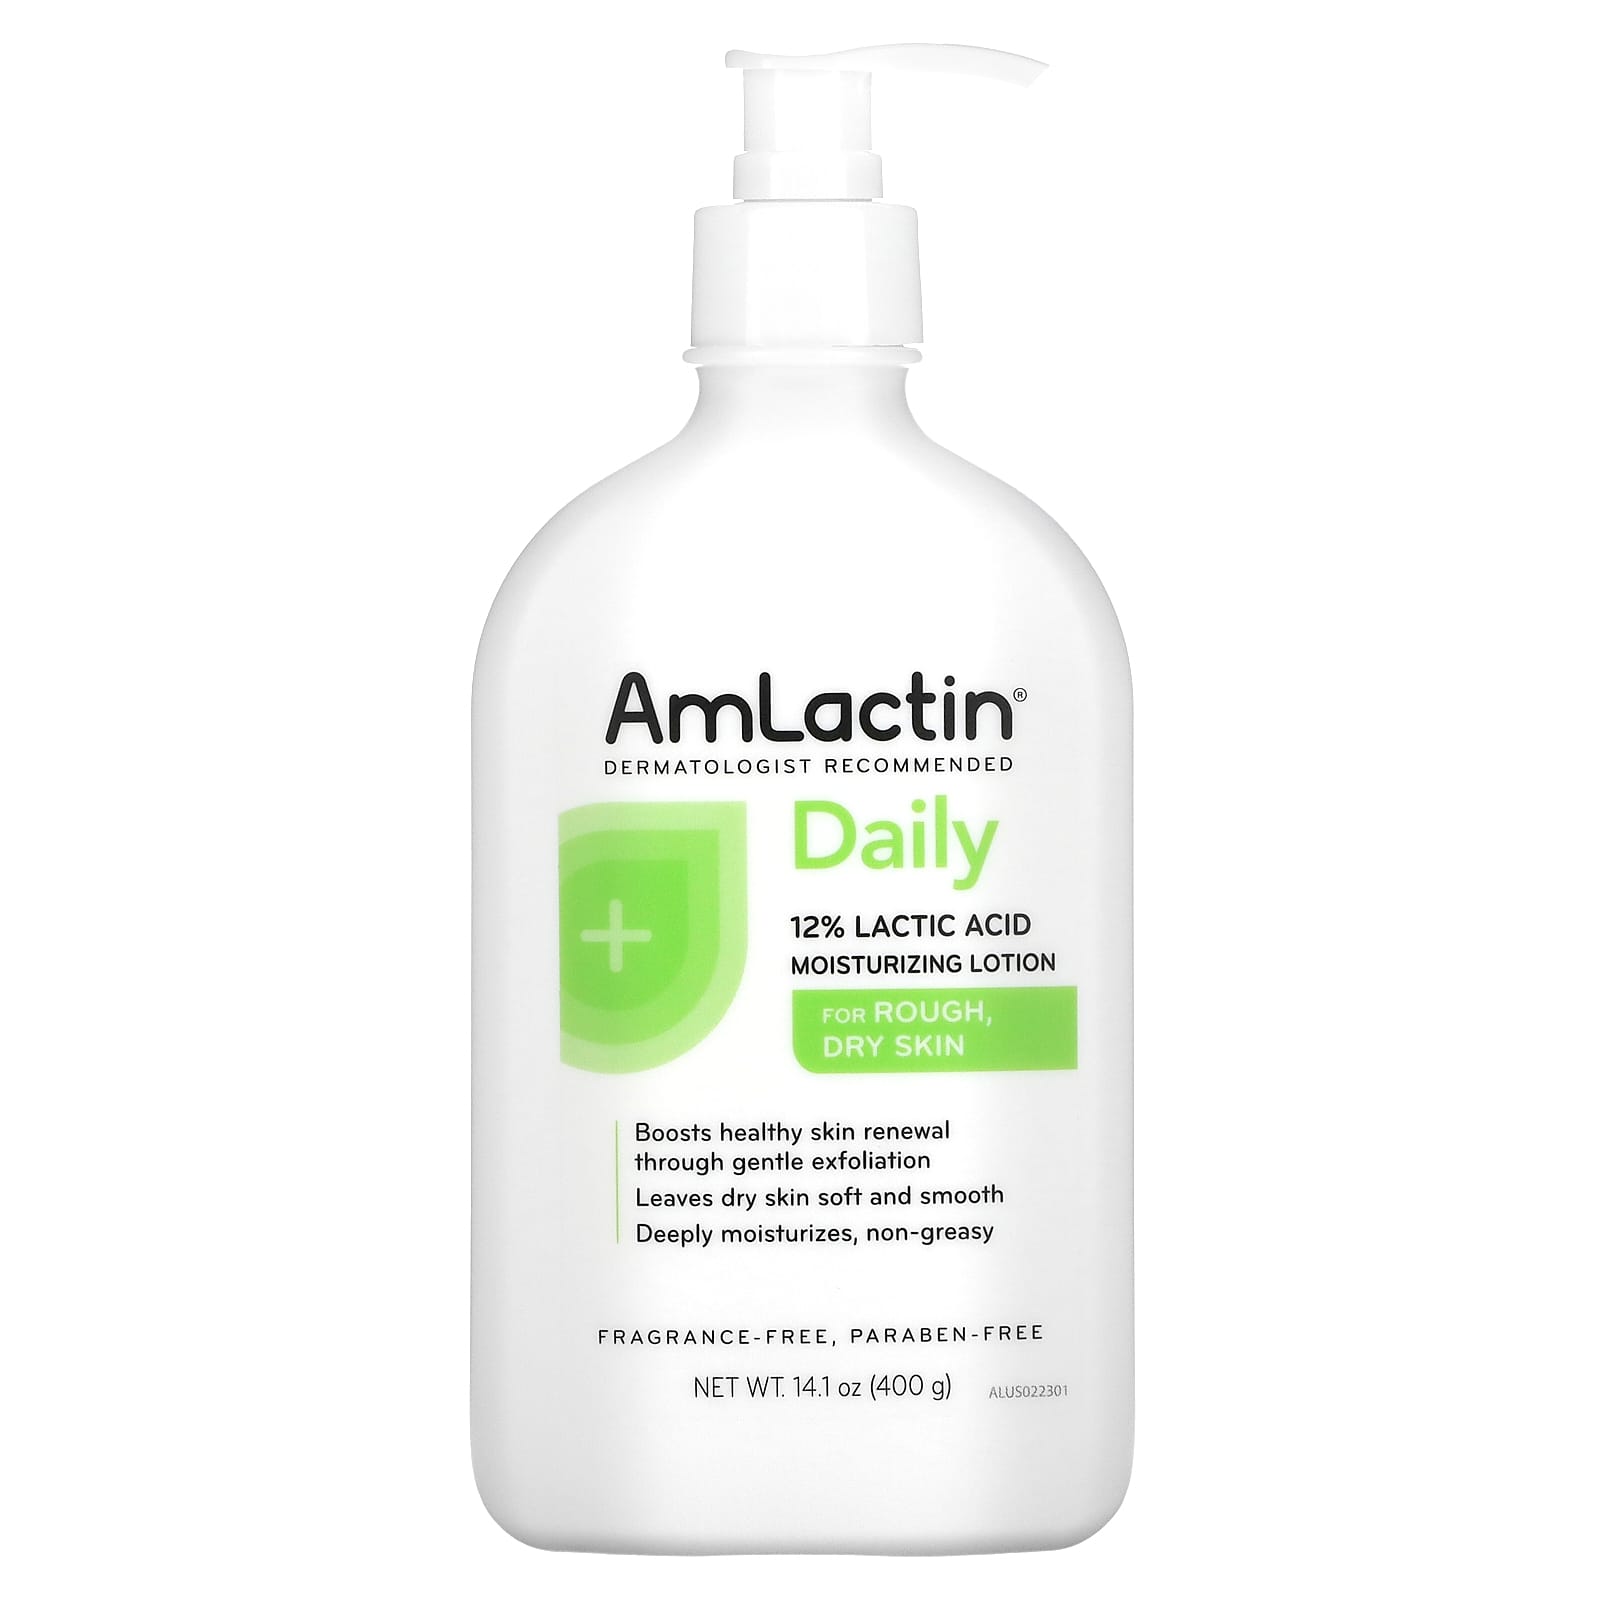 Увлажняющий Лосьон Amlactin с 12% молочной кислотой, 400 г amlactin rapid relief восстанавливающий лосьон для кожи без отдушки 400 г 14 1 унции